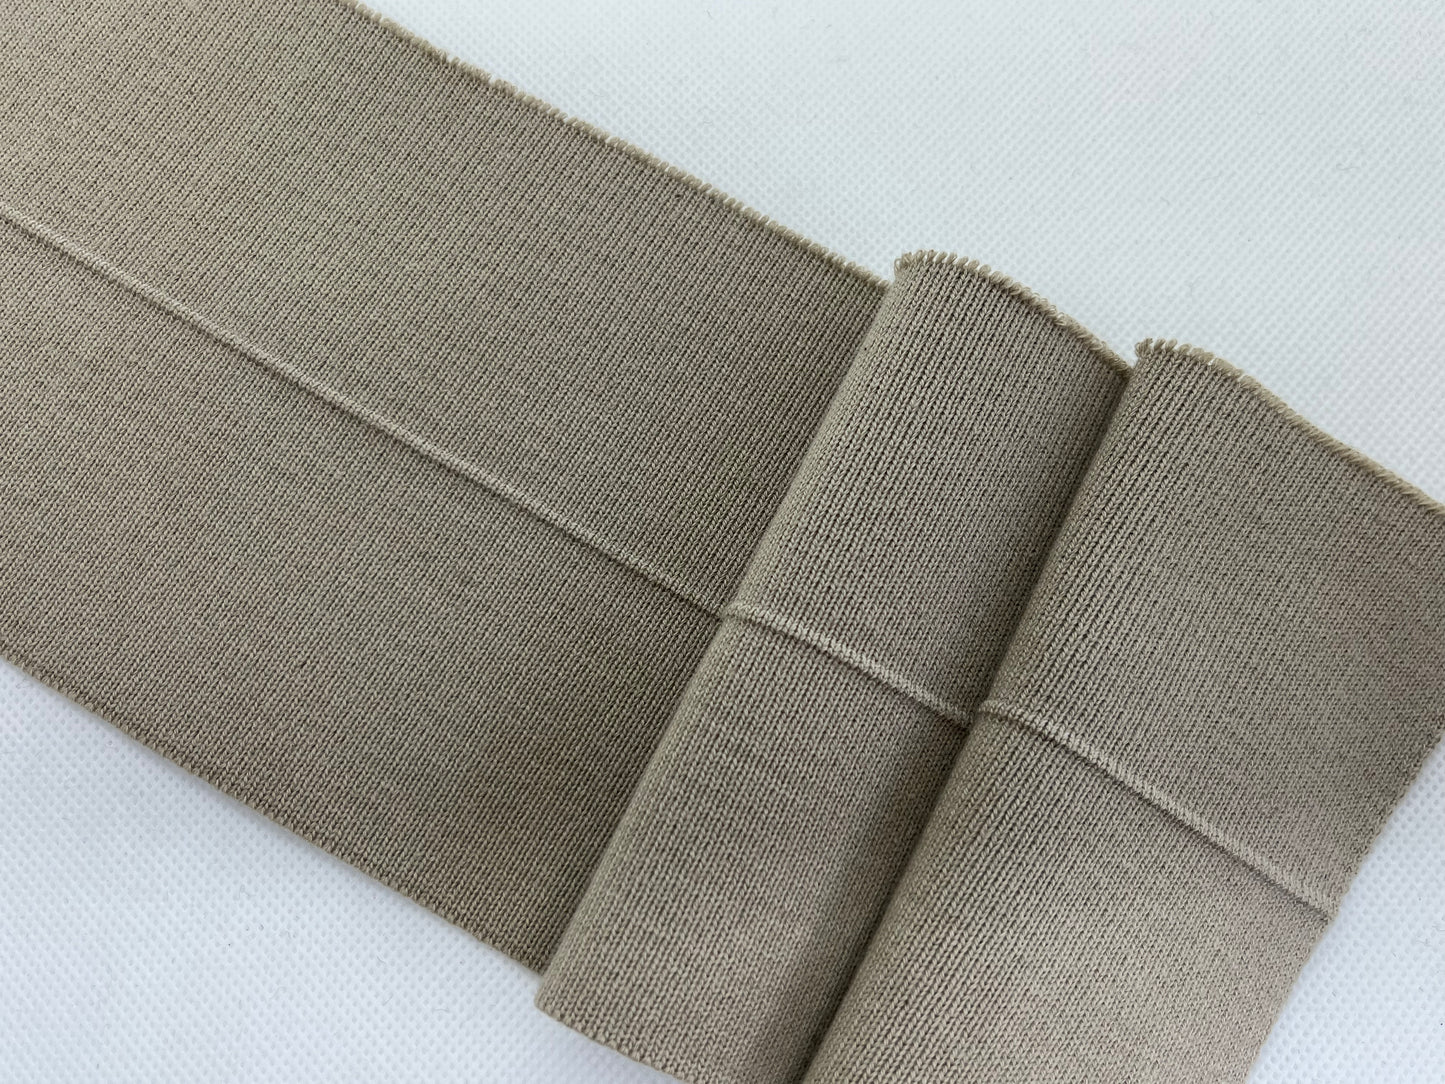 Bord-côte basique taupe uni (coton)